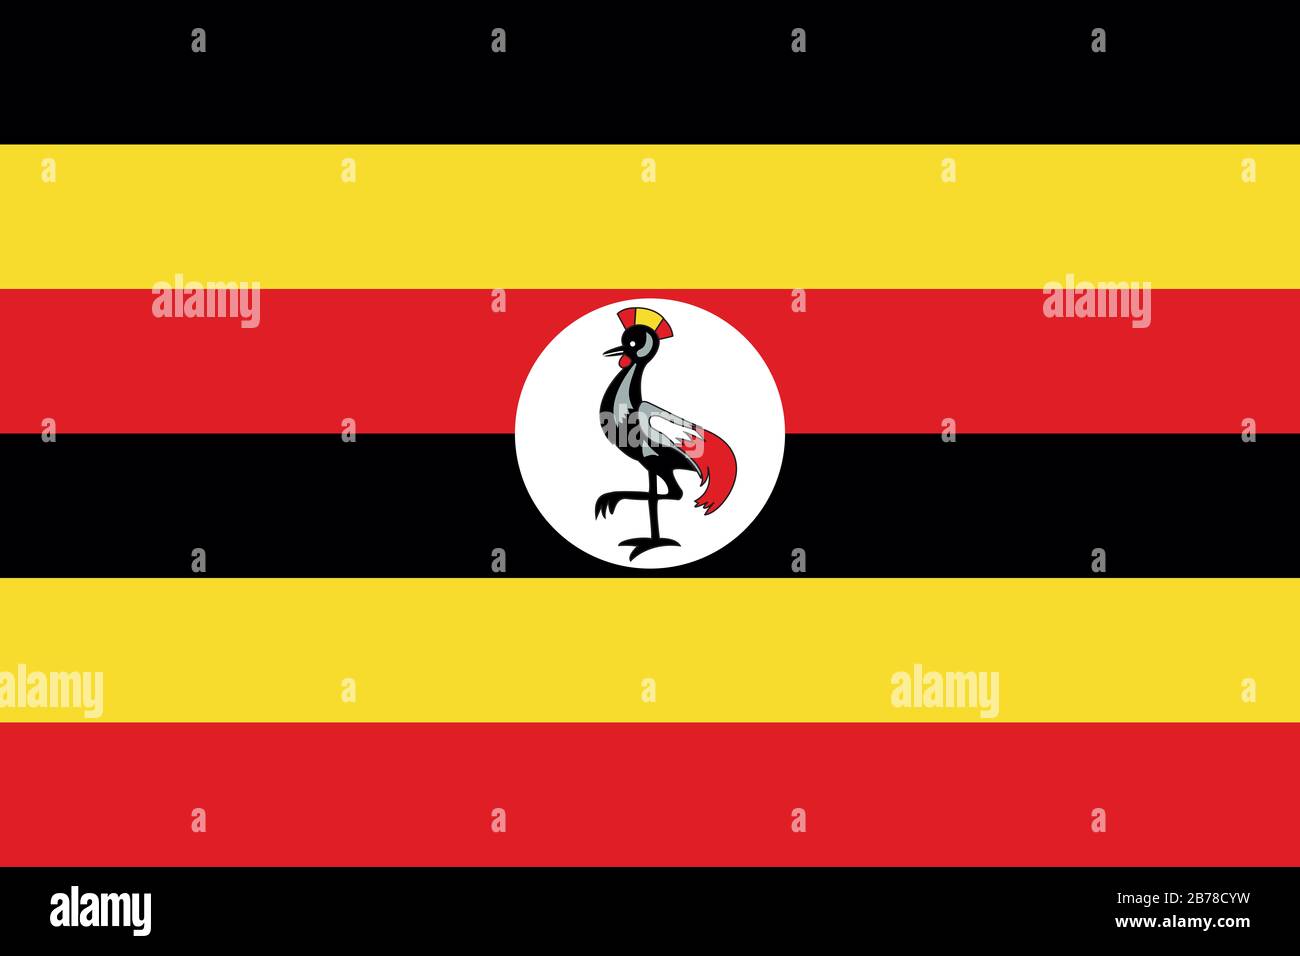 Flagge von Uganda - Standardverhältnis der ugandischen Flagge - True RGB-Farbmodus Stockfoto